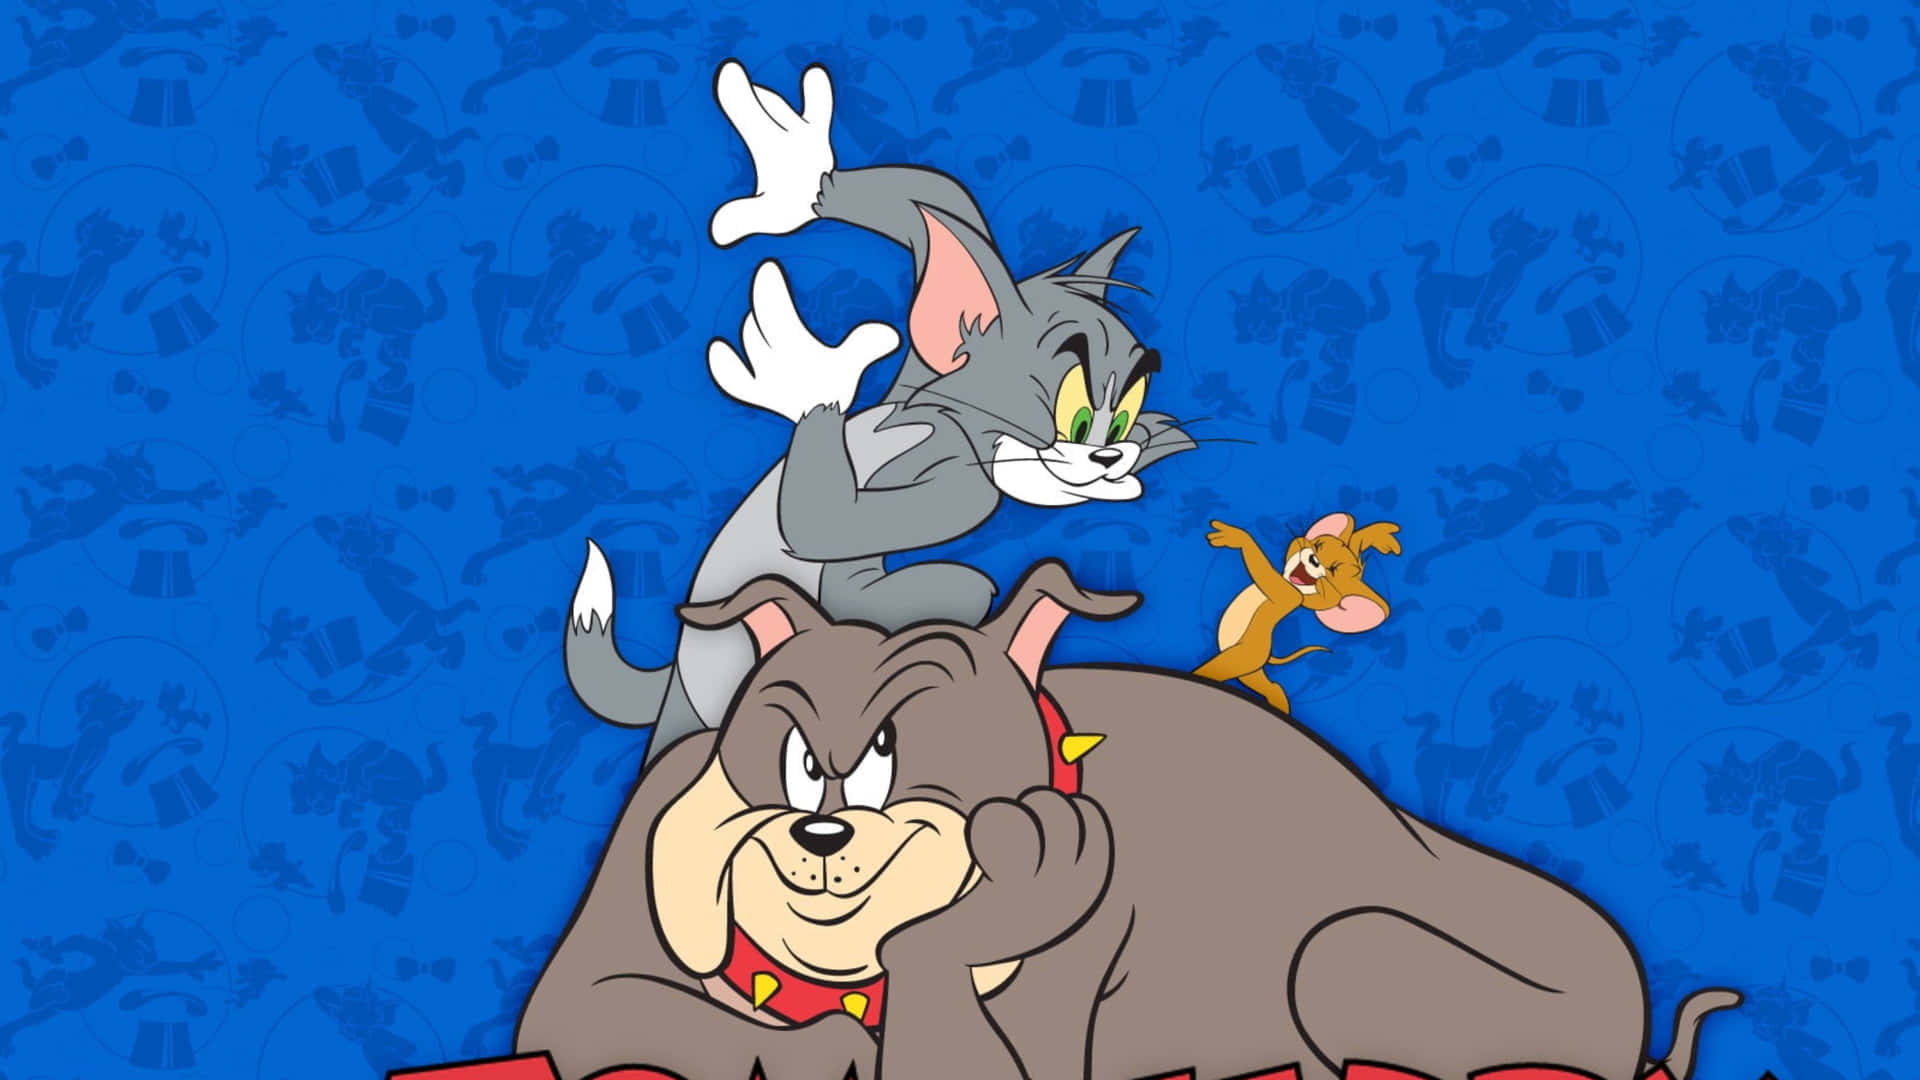 Tom og Jerry har det sædvanlige sjove i denne sjove scene. Wallpaper